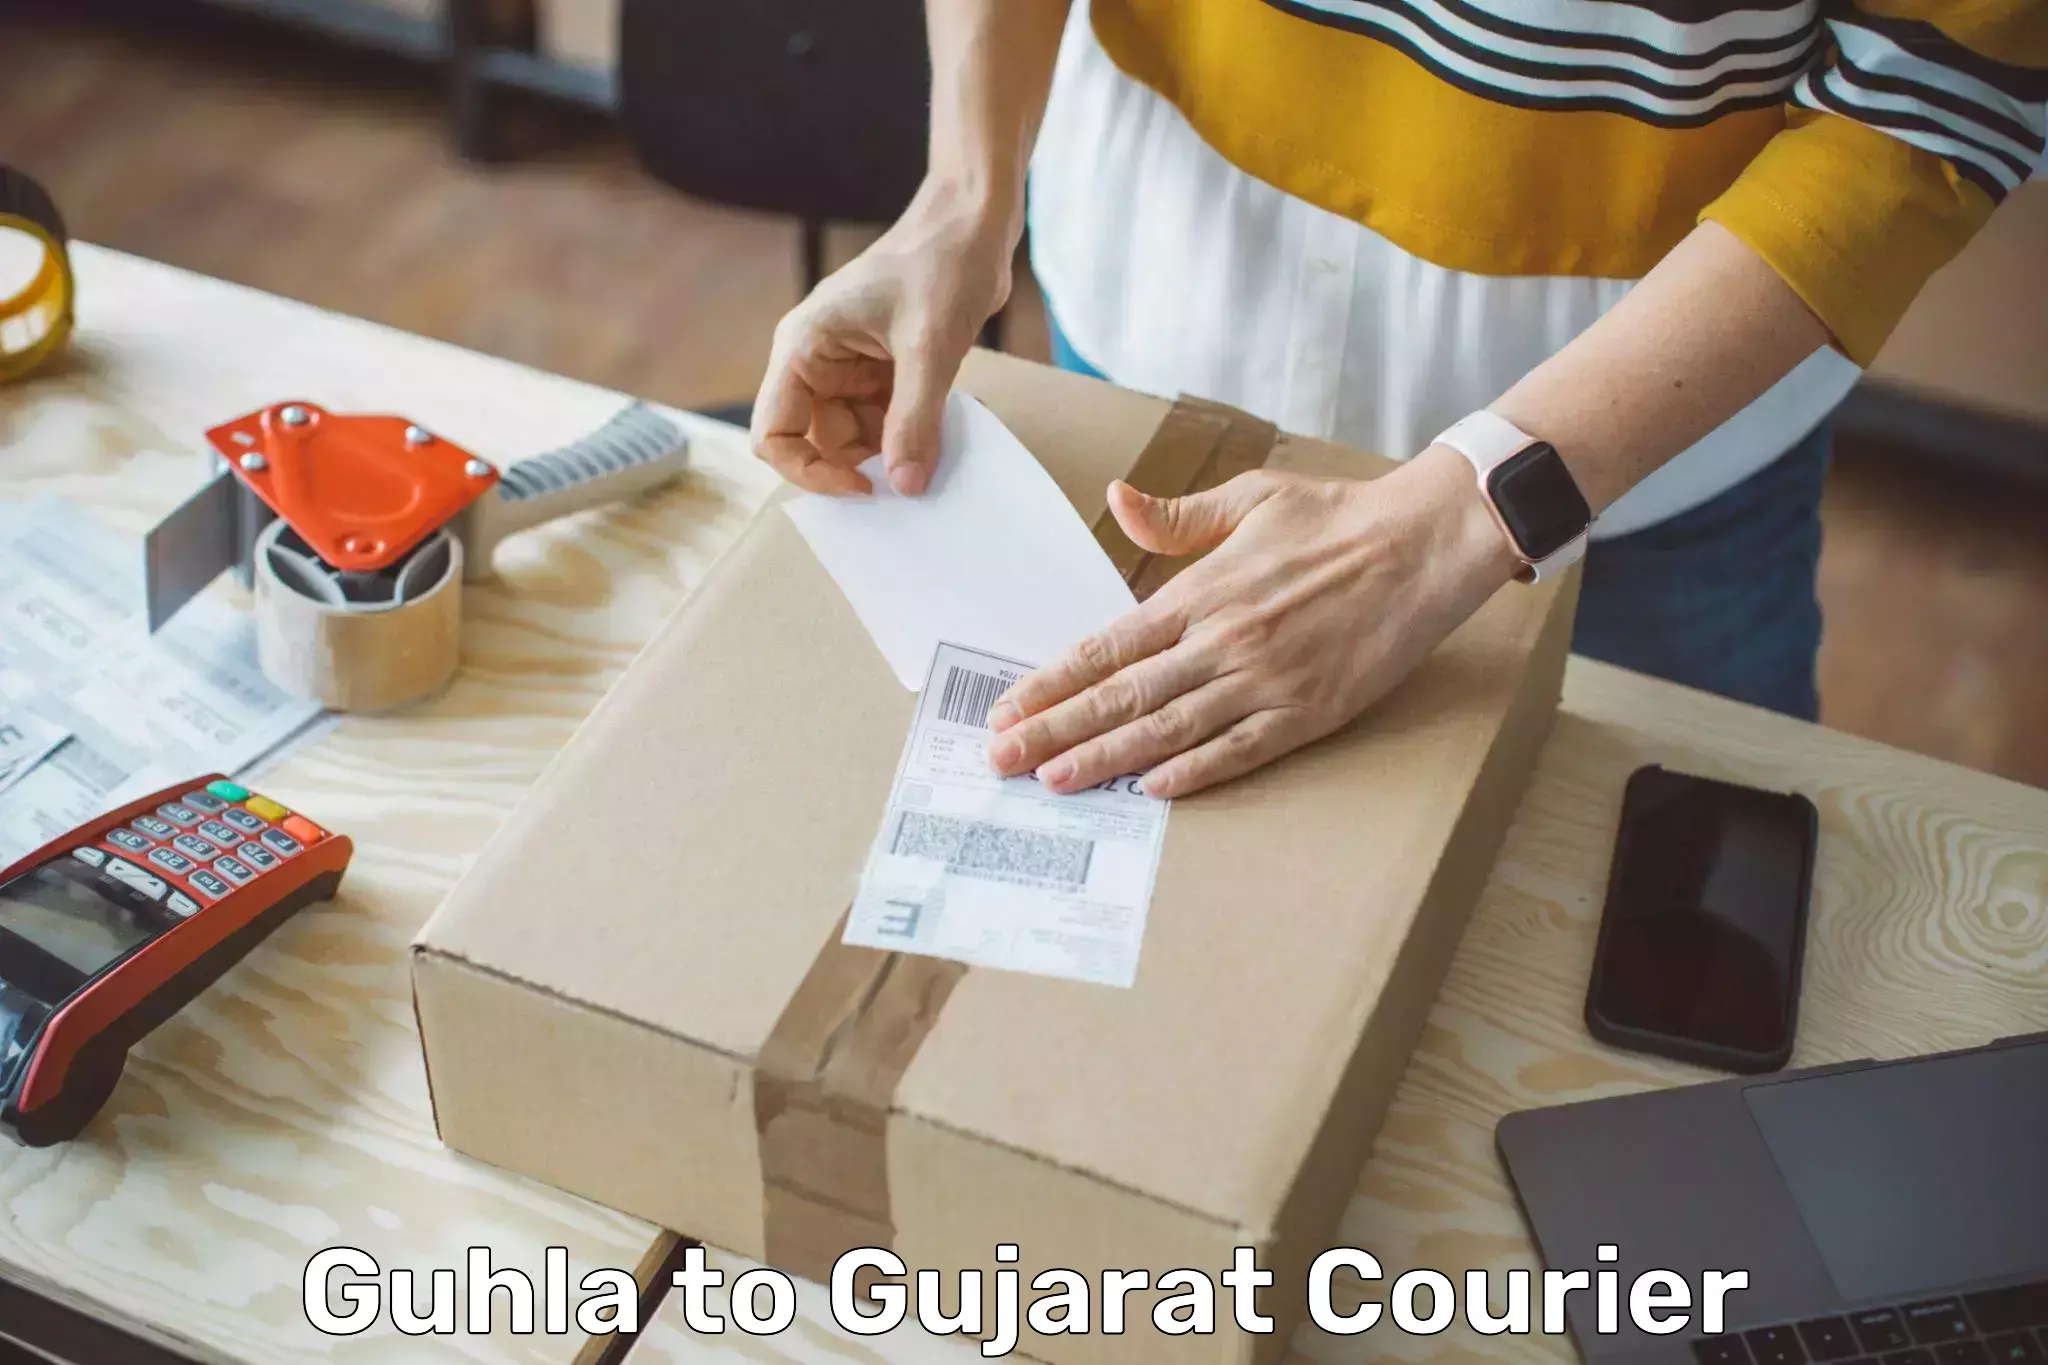 Customizable delivery plans Guhla to Nakhatrana